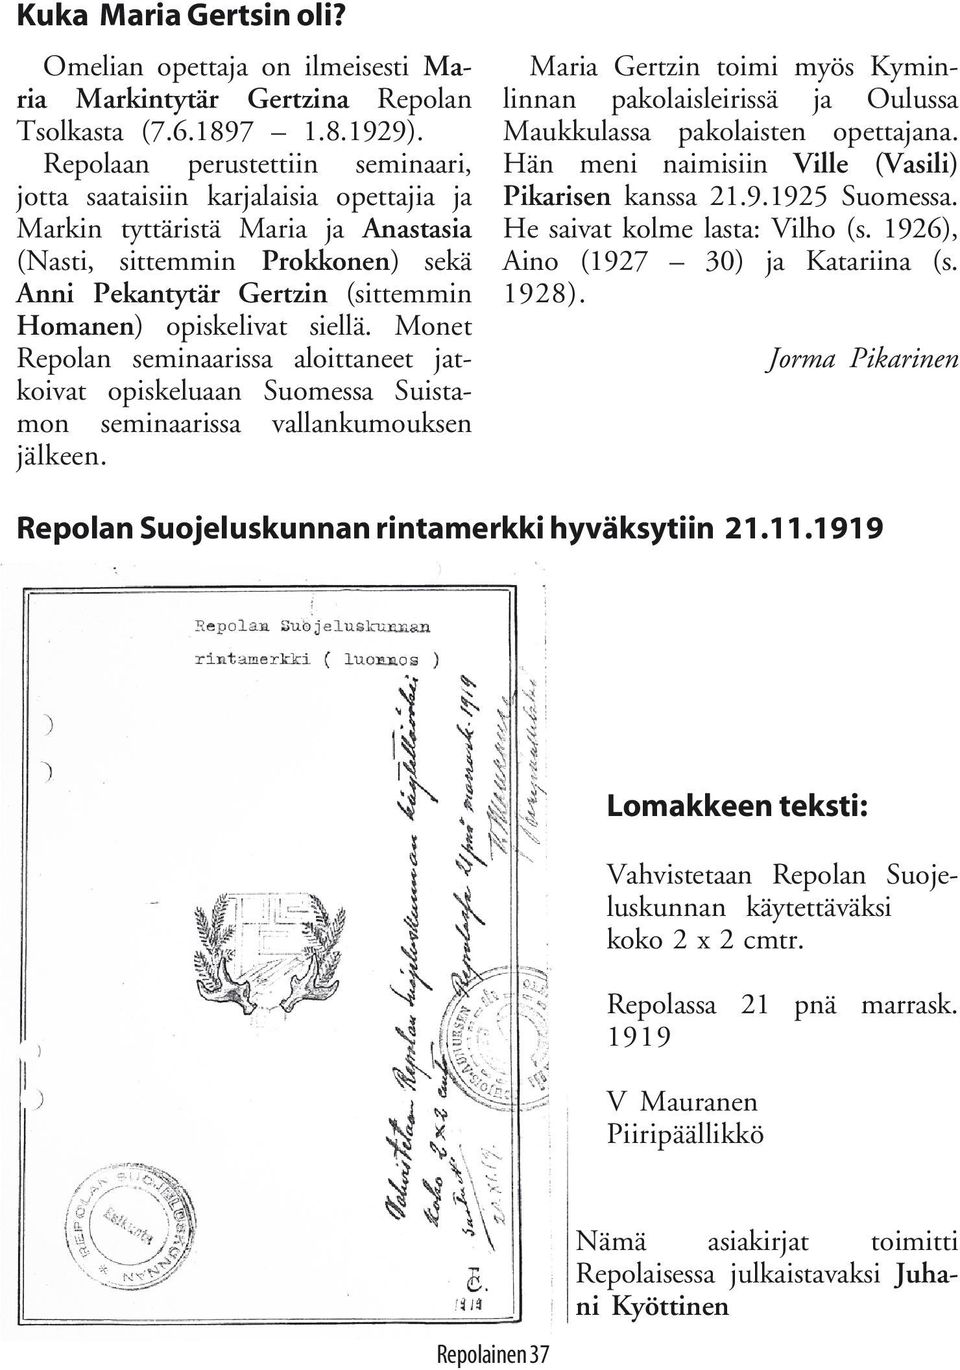 opiskelivat siellä. Monet Repolan seminaarissa aloittaneet jatkoivat opiskeluaan Suomessa Suistamon seminaarissa vallankumouksen jälkeen.